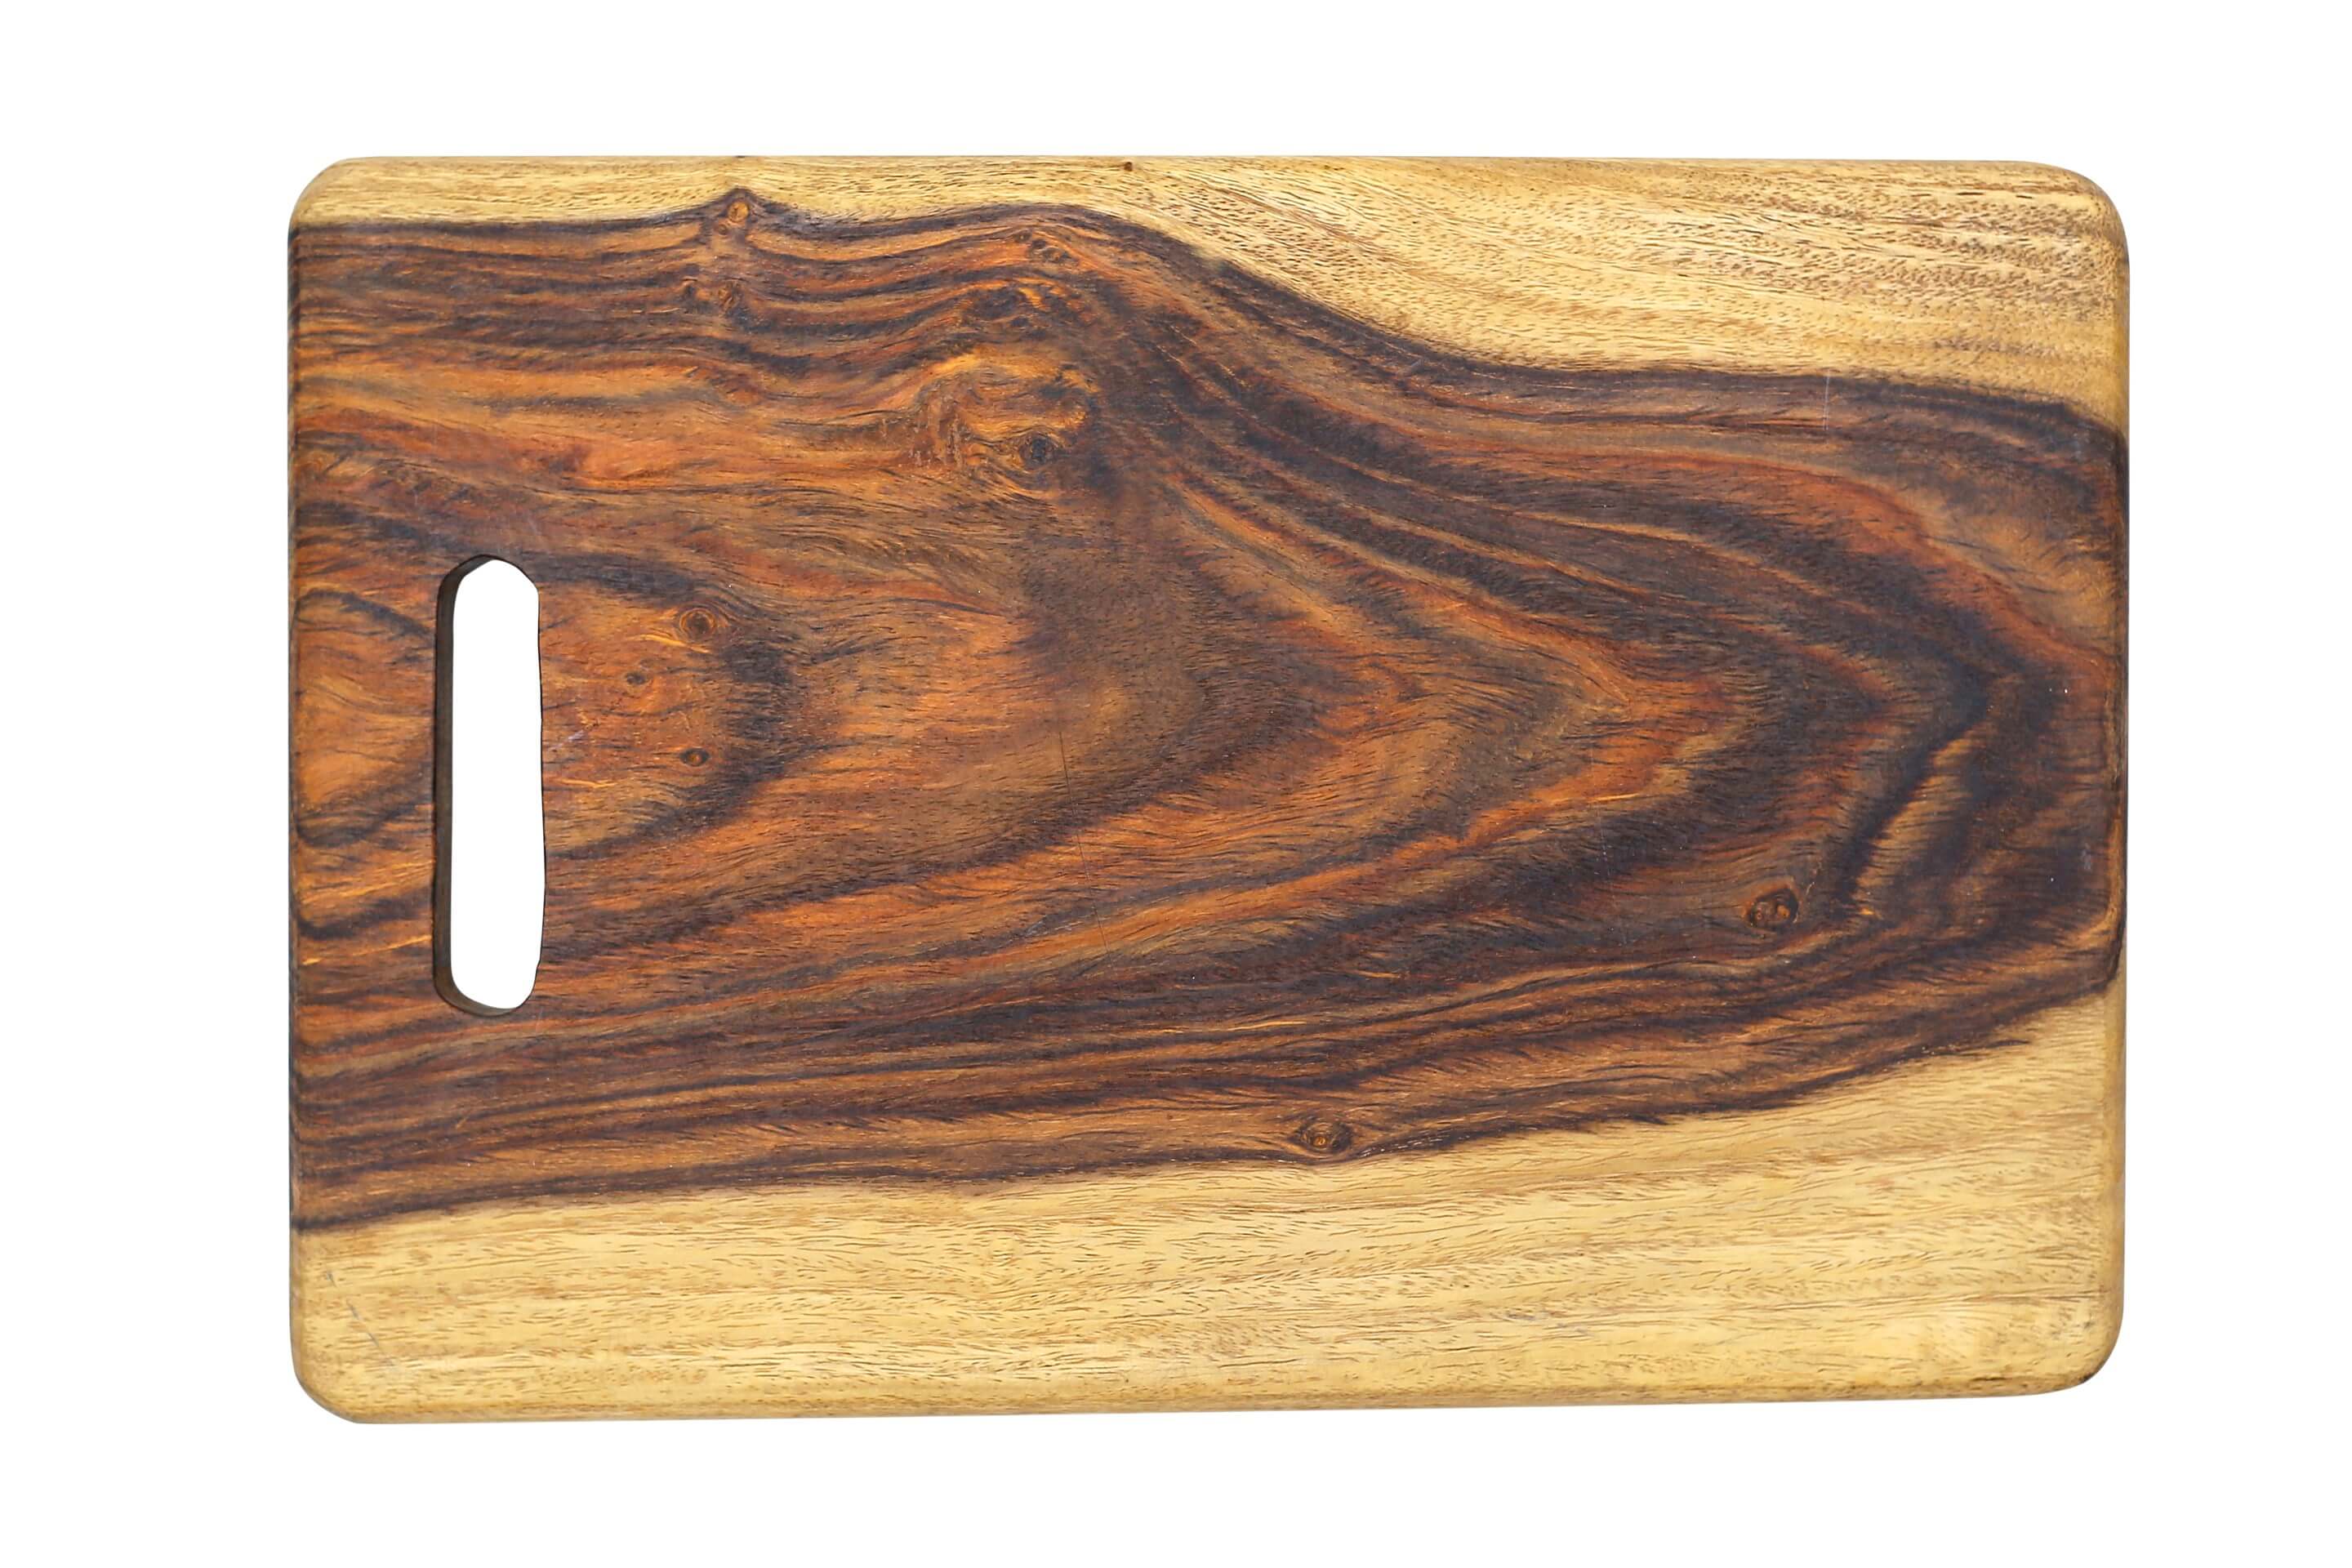 (Single wood) Solid Handy Chopping Board Cutting Board